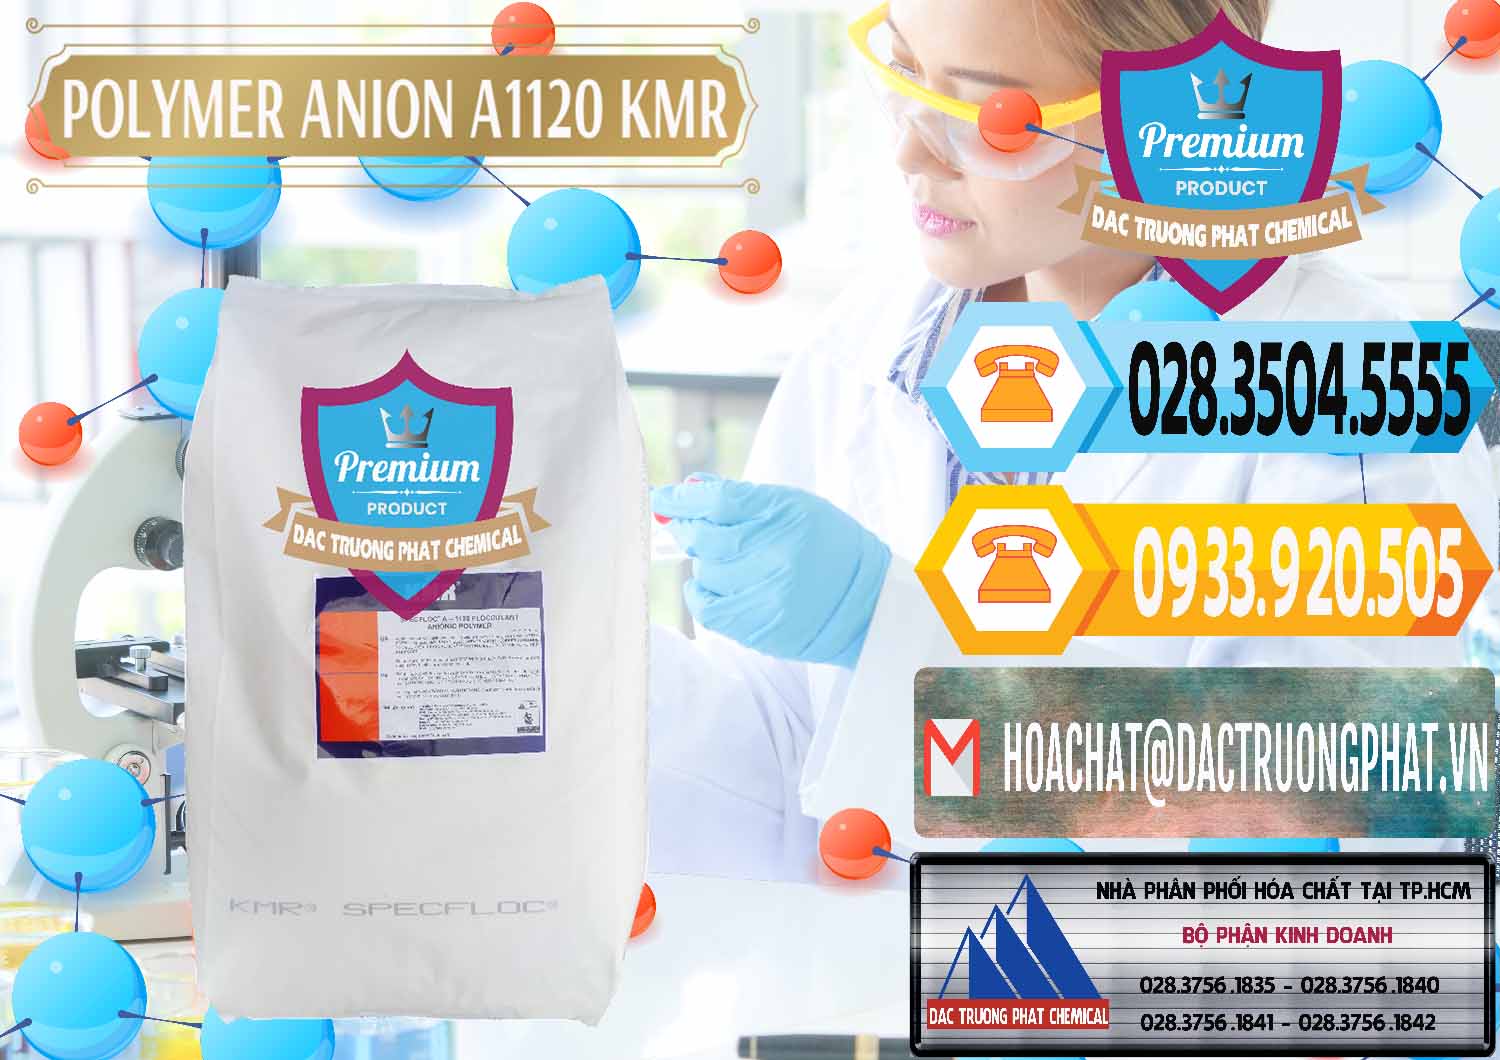 Nơi cung cấp & bán Polymer Anion A1120 - KMR Anh Quốc England - 0119 - Nơi cung ứng & phân phối hóa chất tại TP.HCM - hoachattayrua.net